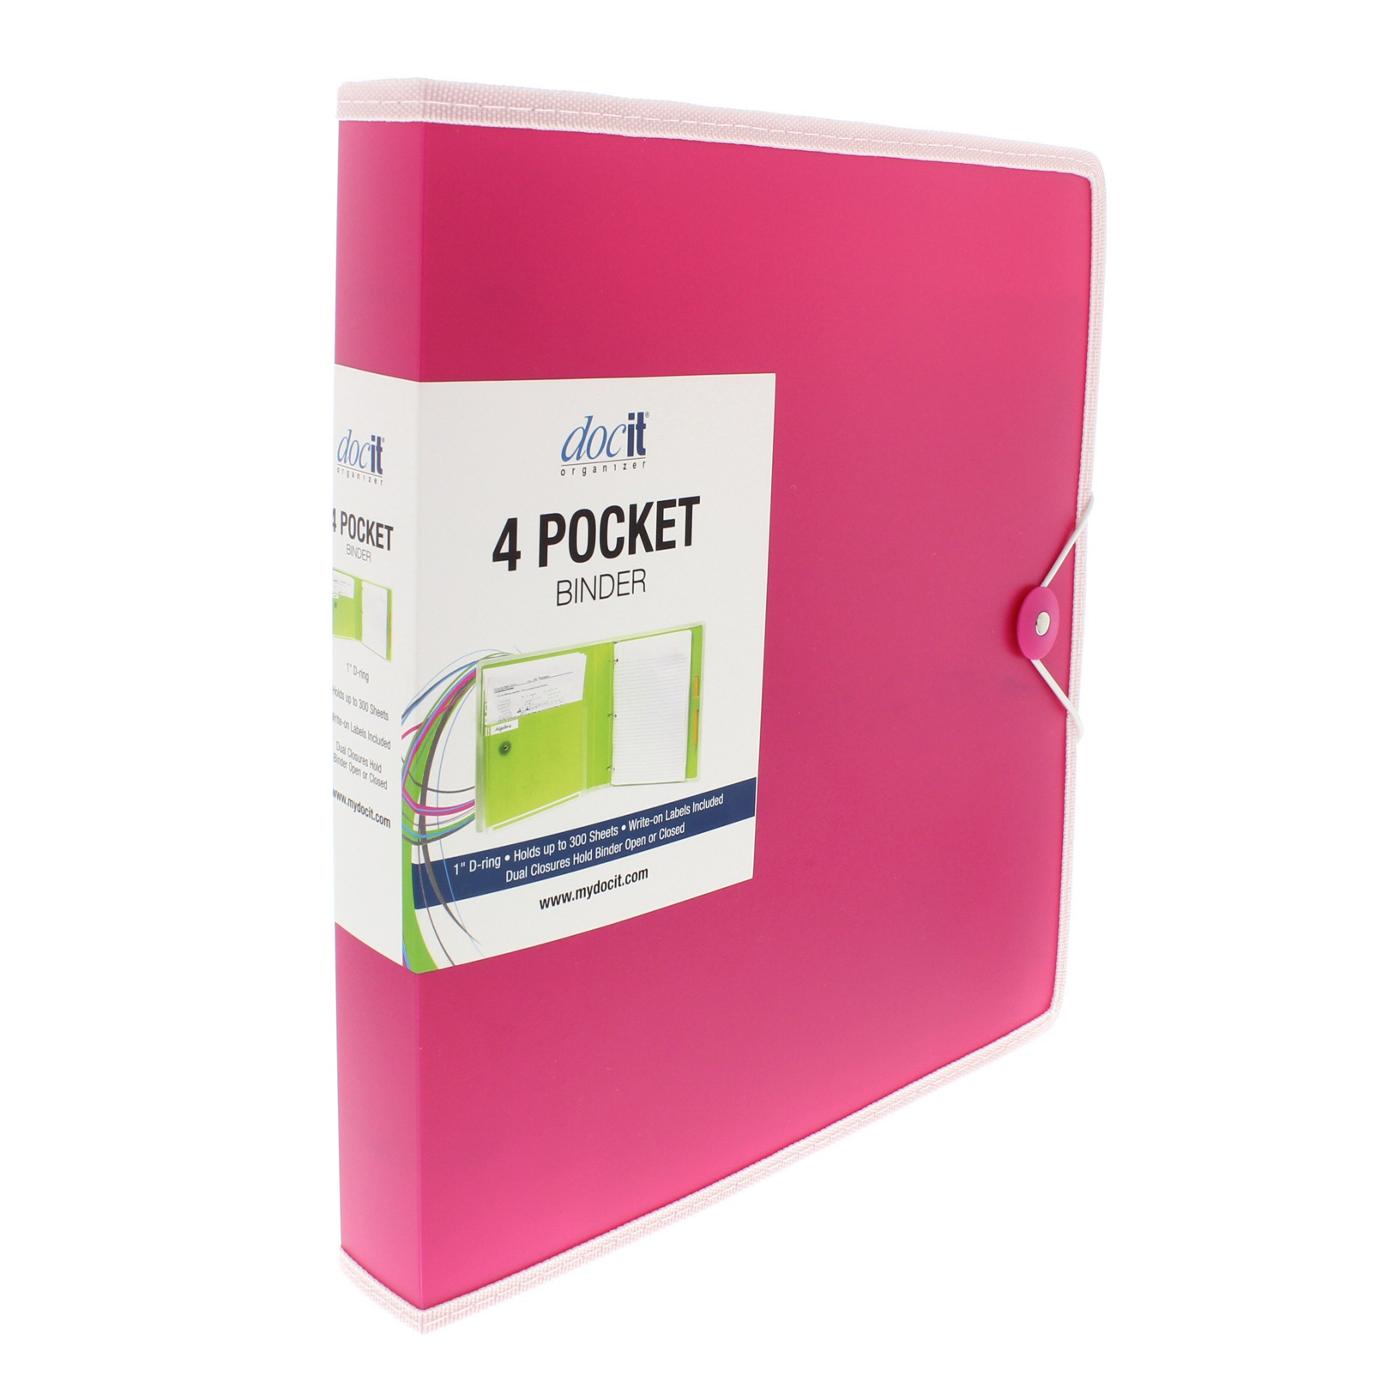 DocIt Organizer 4 Pocket Binder, Multi Pocket Folder And 1-Inch 3 Ring Binder; image 2 of 4